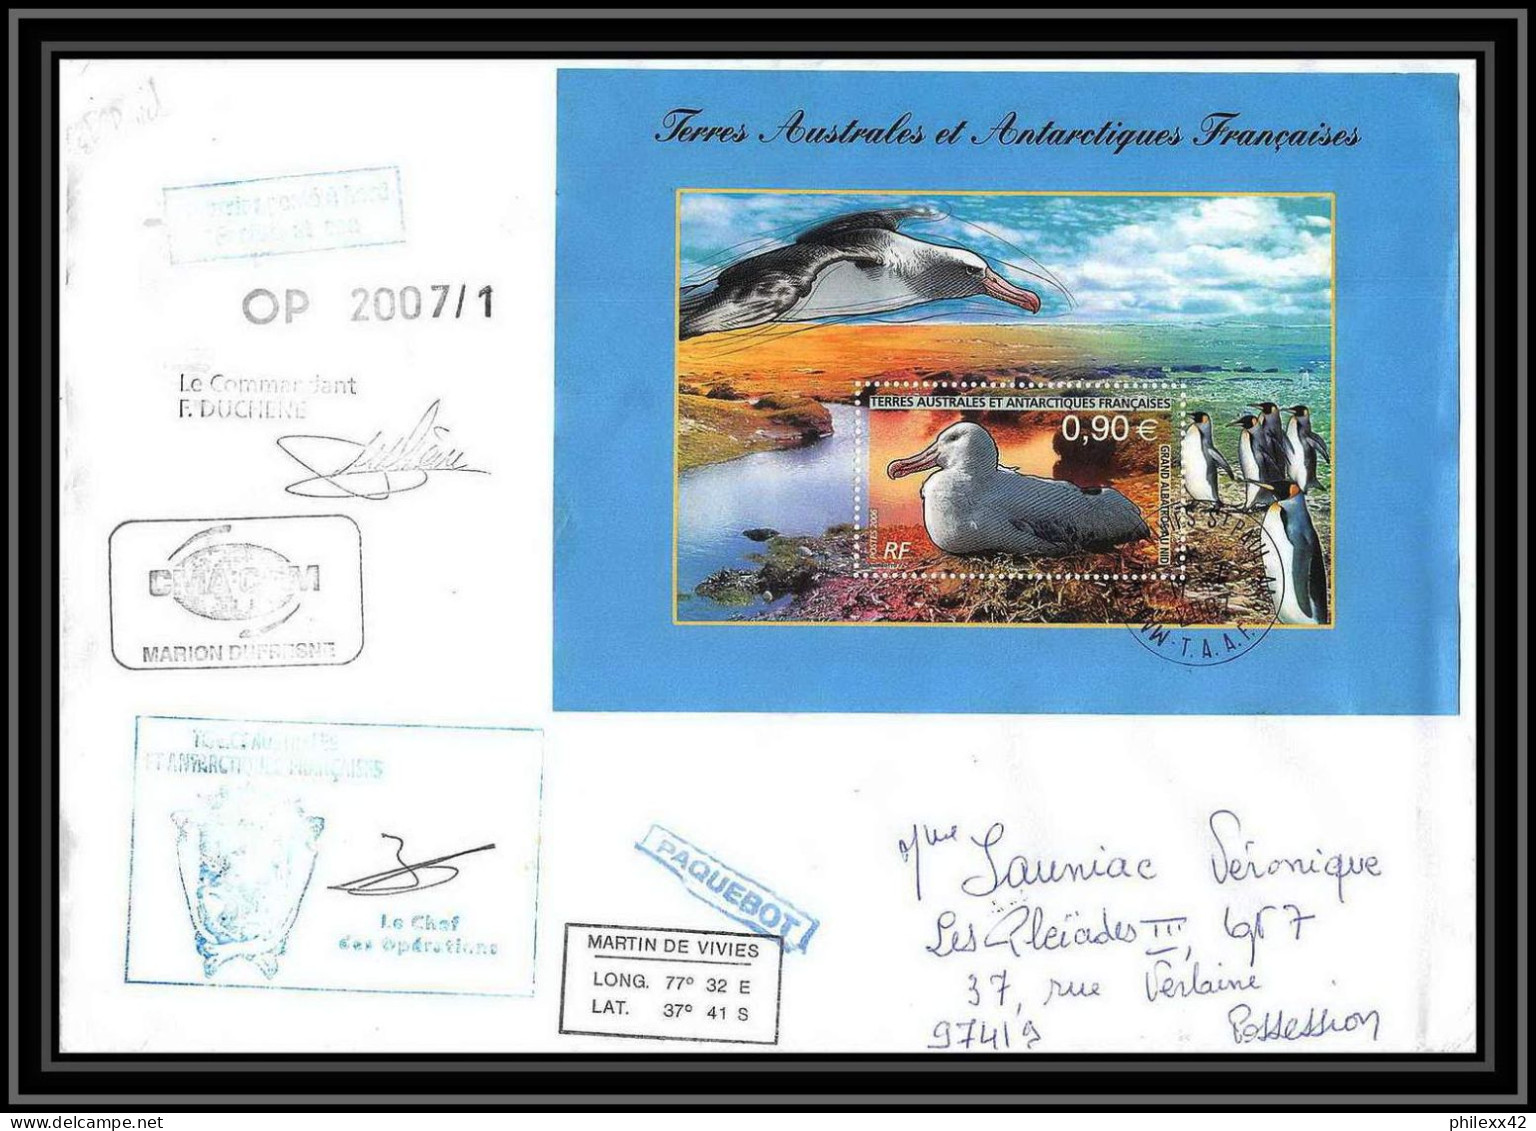 2686 ANTARCTIC Terres Australes TAAF Lettre Dufresne Signé Signed ST PAUL Comptes Réunion Bloc N°16 17/4/2007 - Expéditions Antarctiques